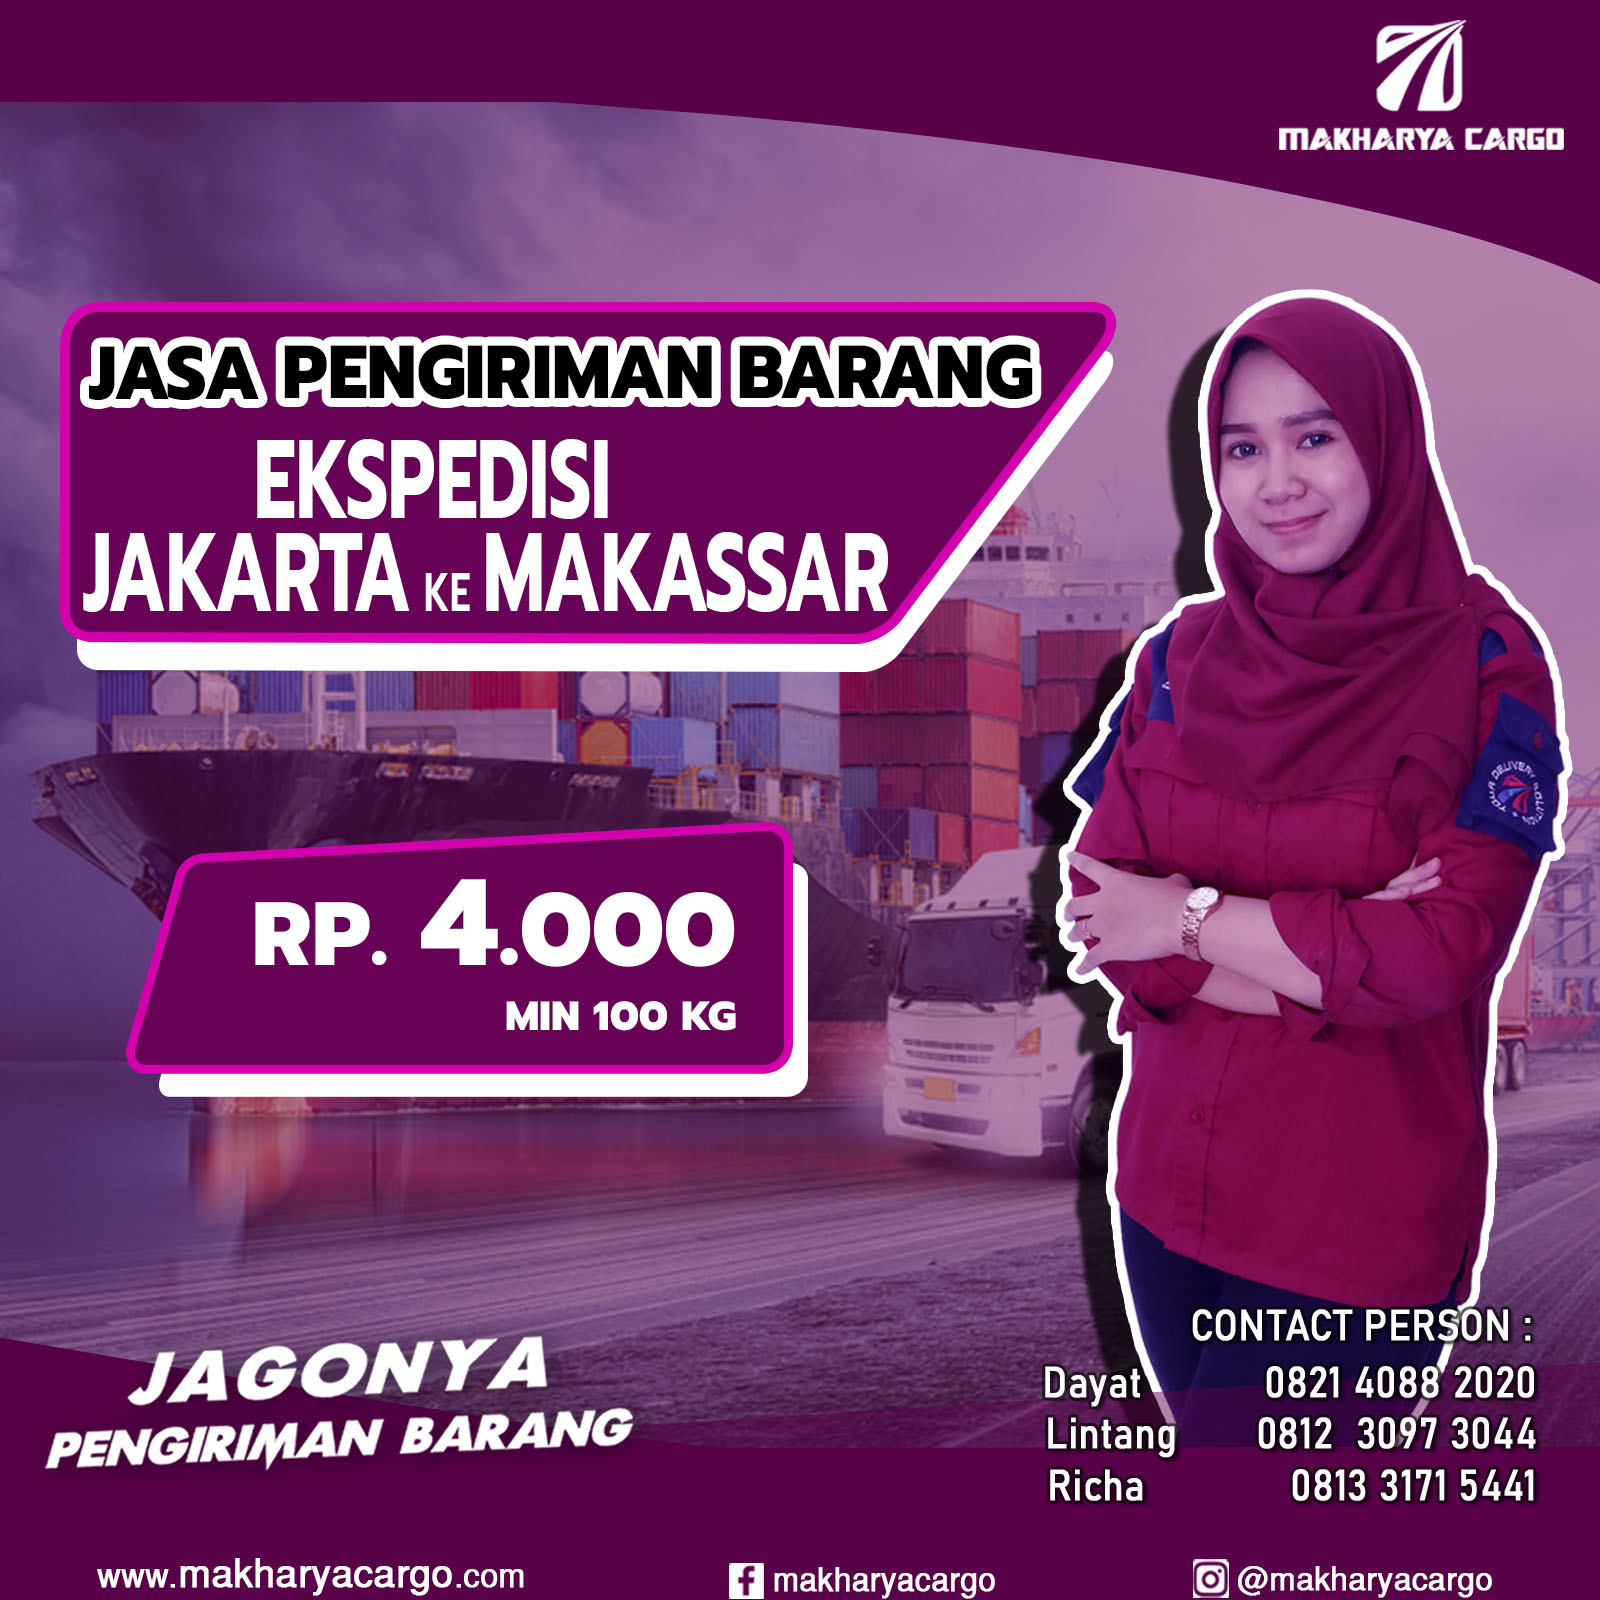 Ekspedisi Jakarta Makassar